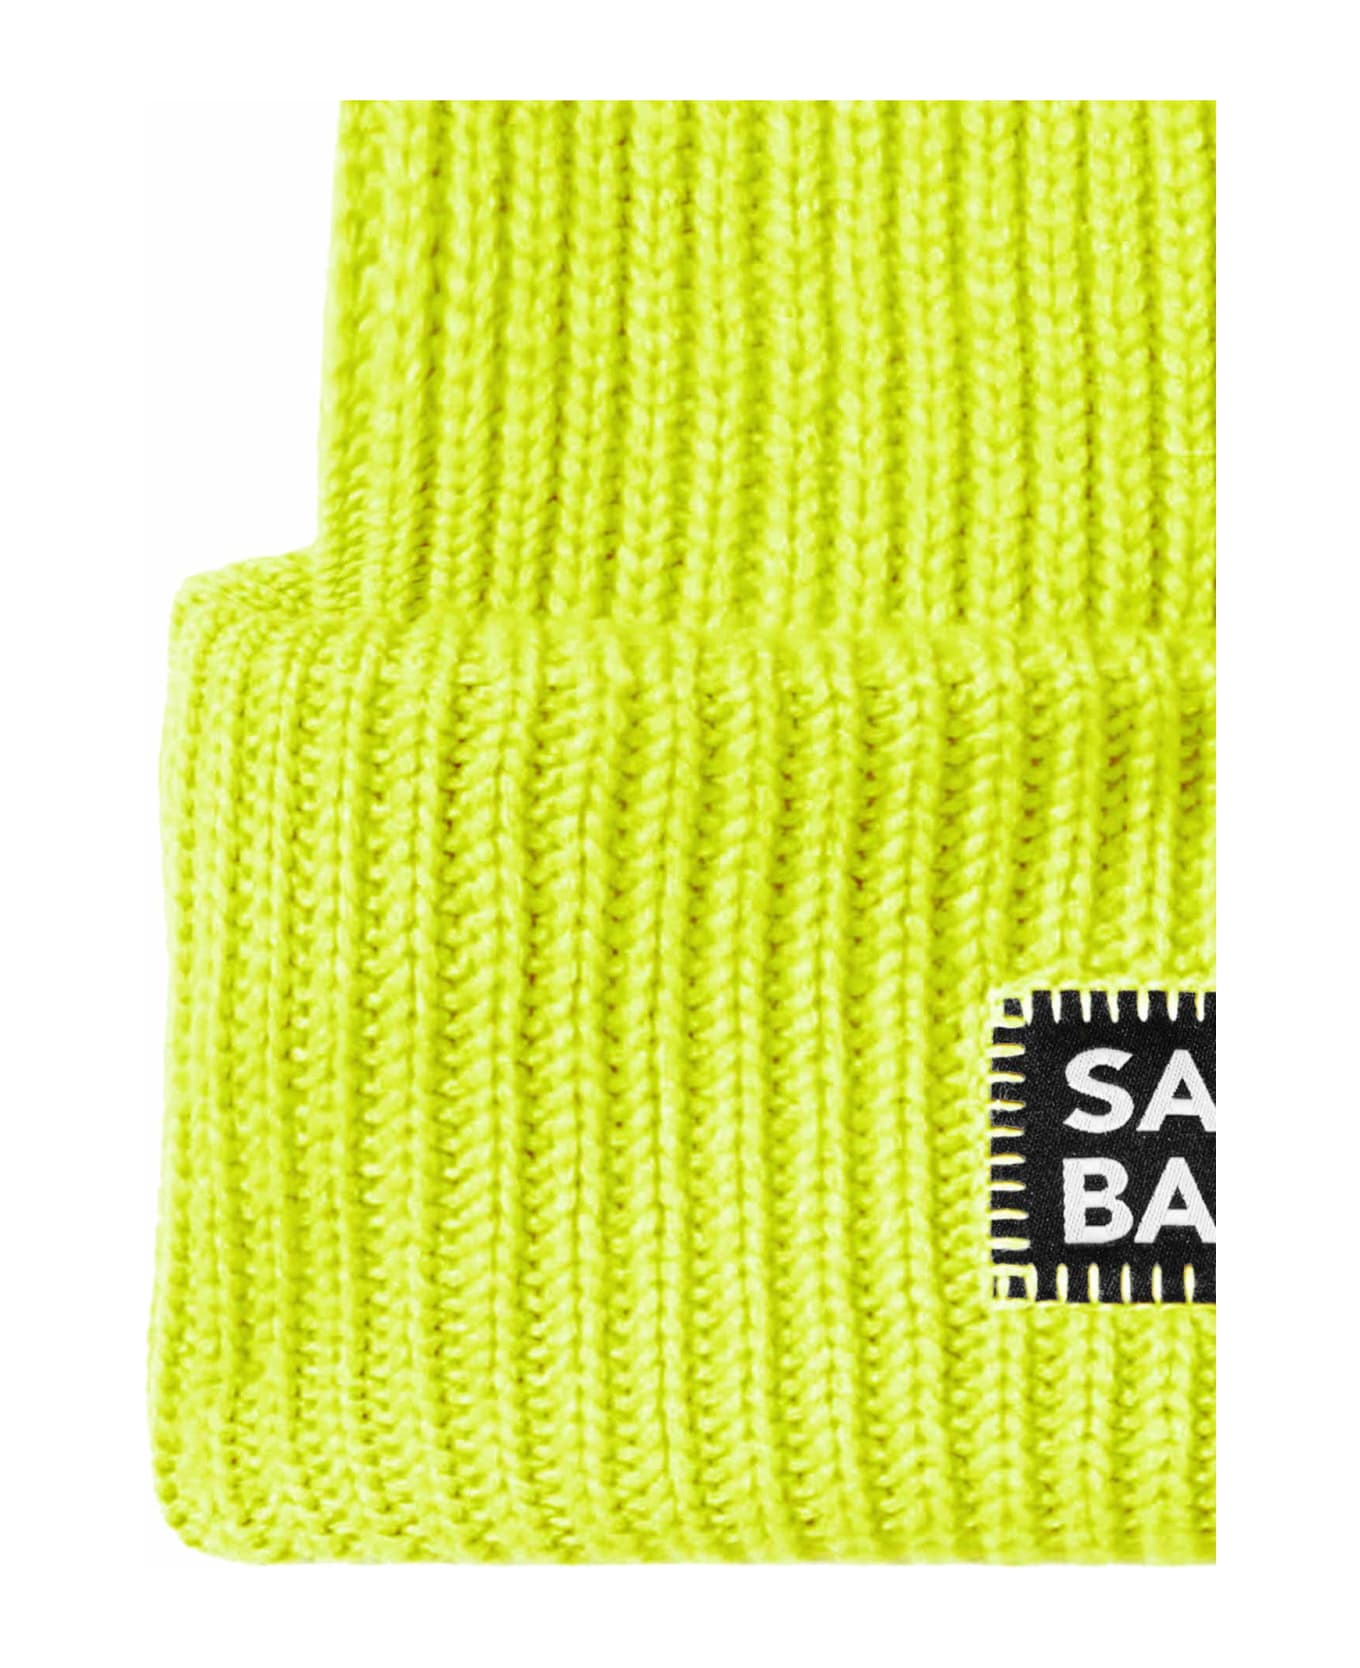 MC2 Saint Barth Man Fluo Yellow Knit Beanie